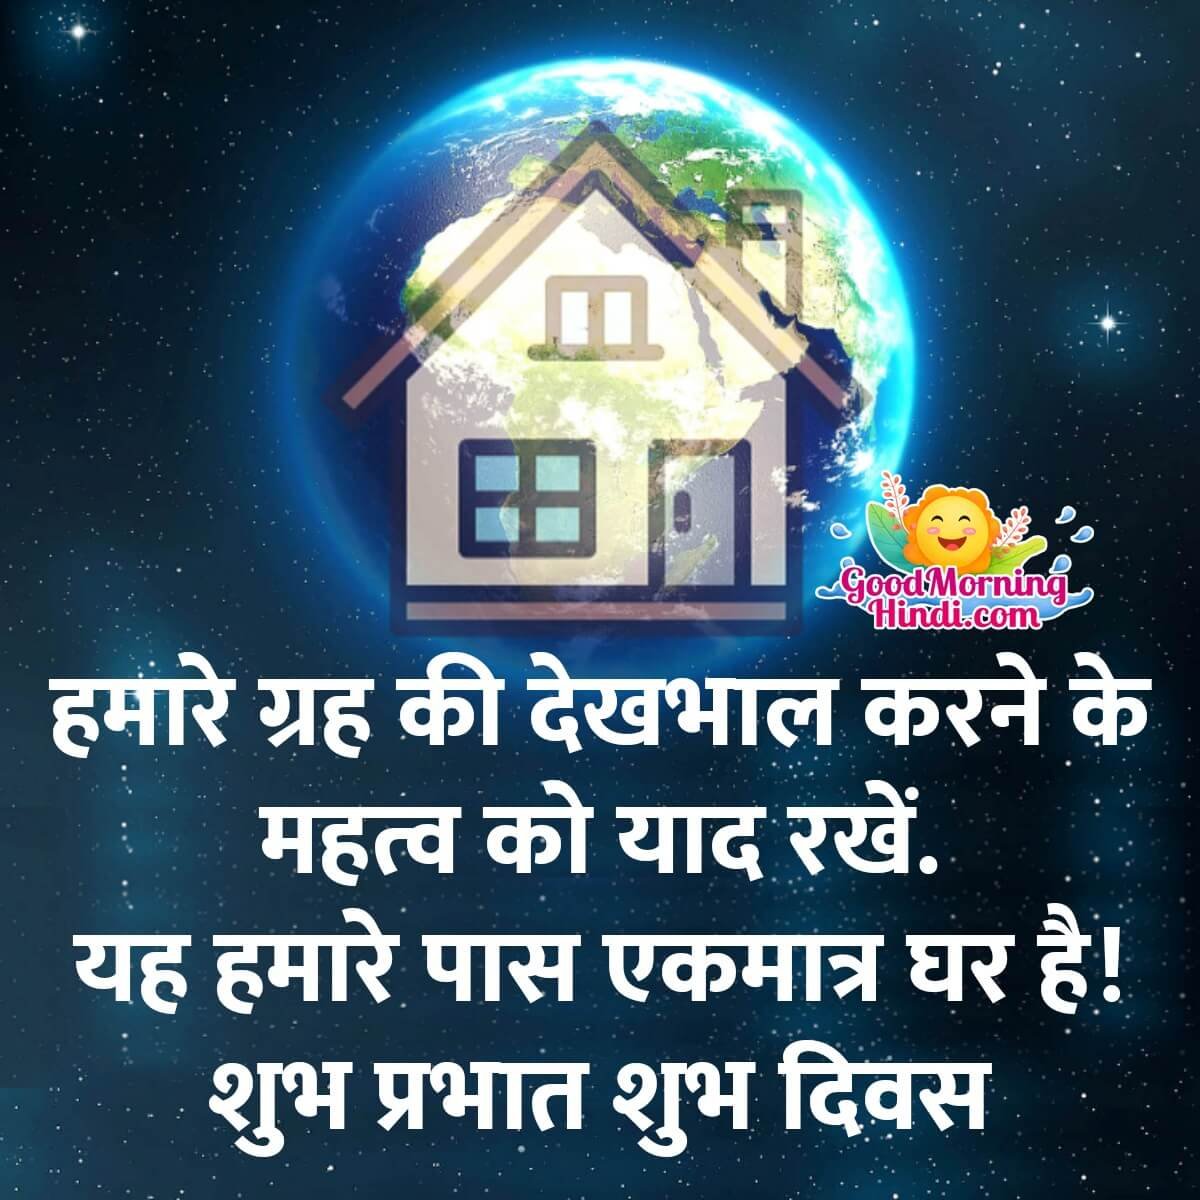 Good Morning Environment Hindi Quotes Images